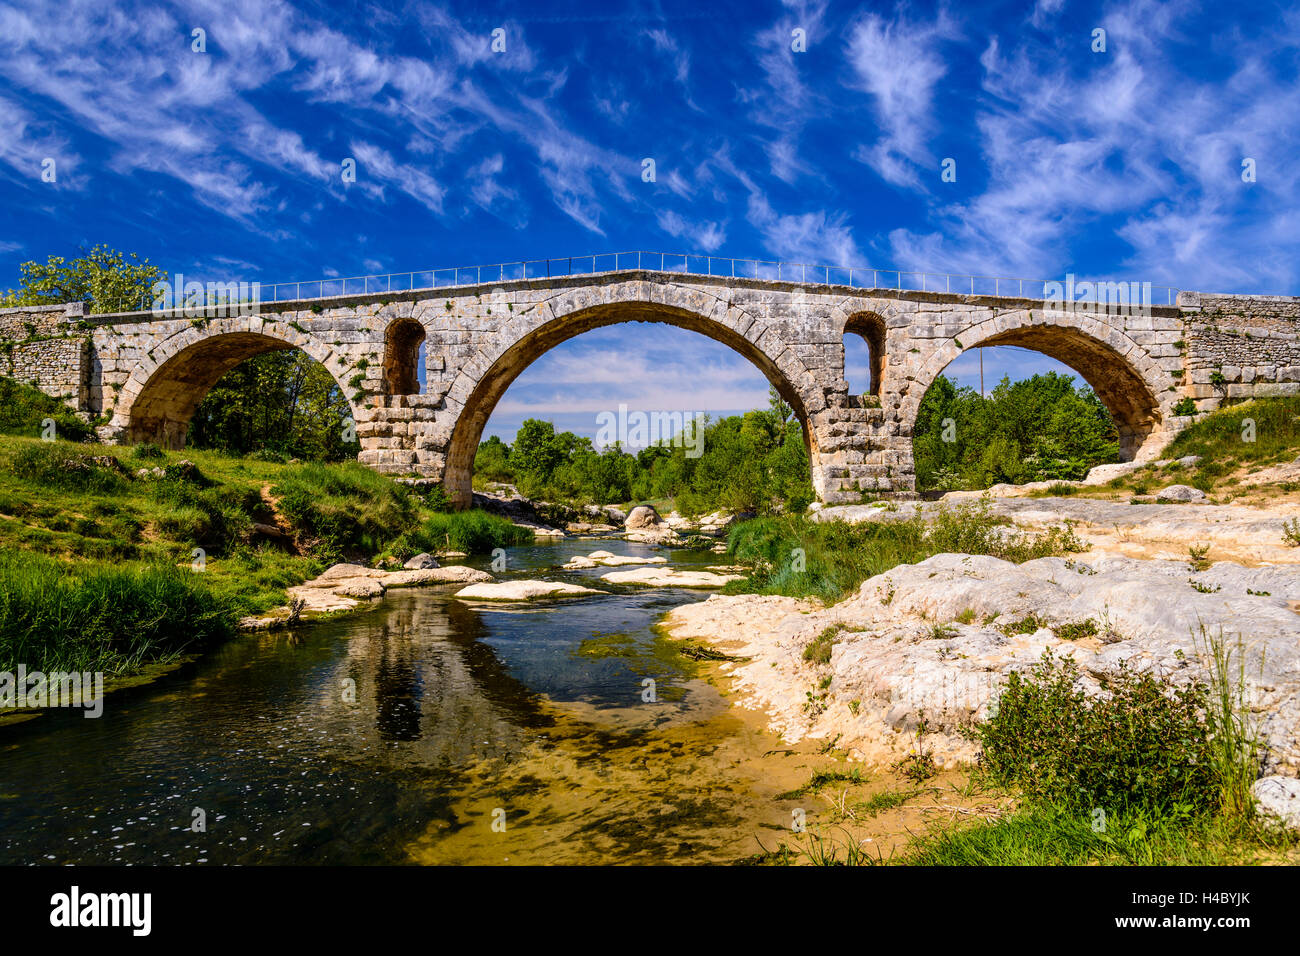 France, Provence, Vaucluse, Bonnieux, river Calavon, Roman stone arched bridge Pont Julien Stock Photo